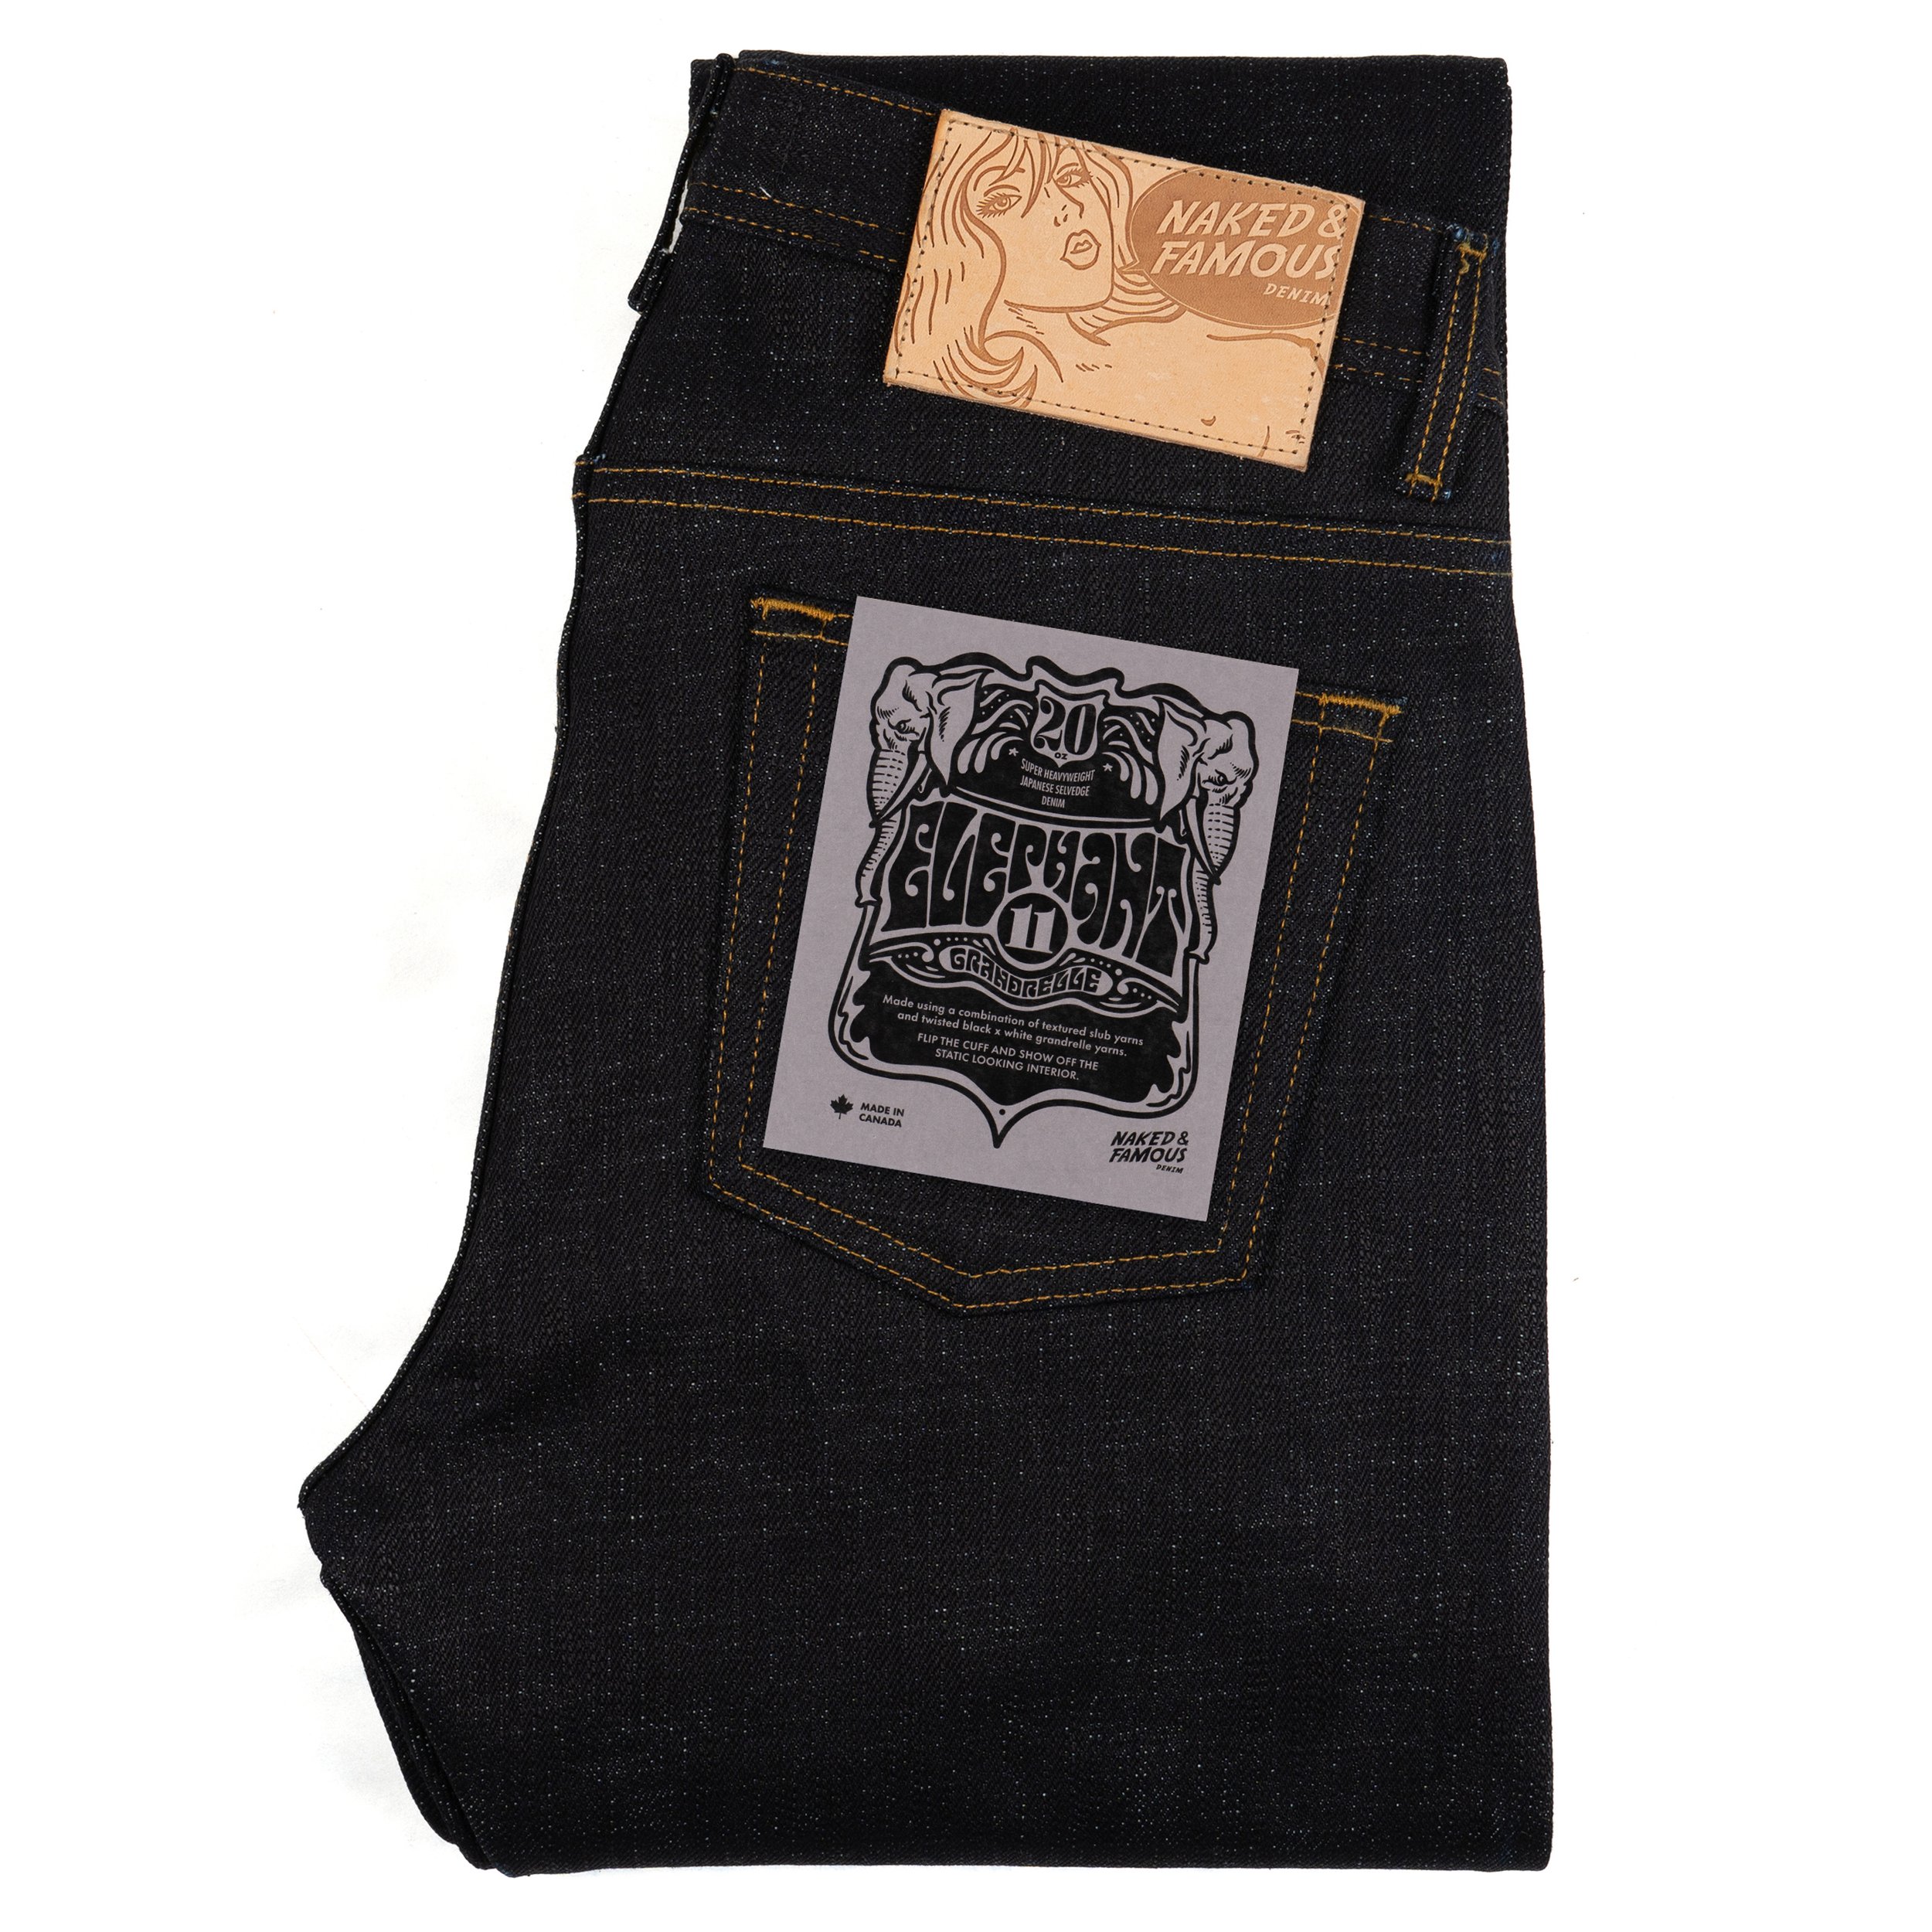  Elephant 11 - Grandrelle - jeans - folded 